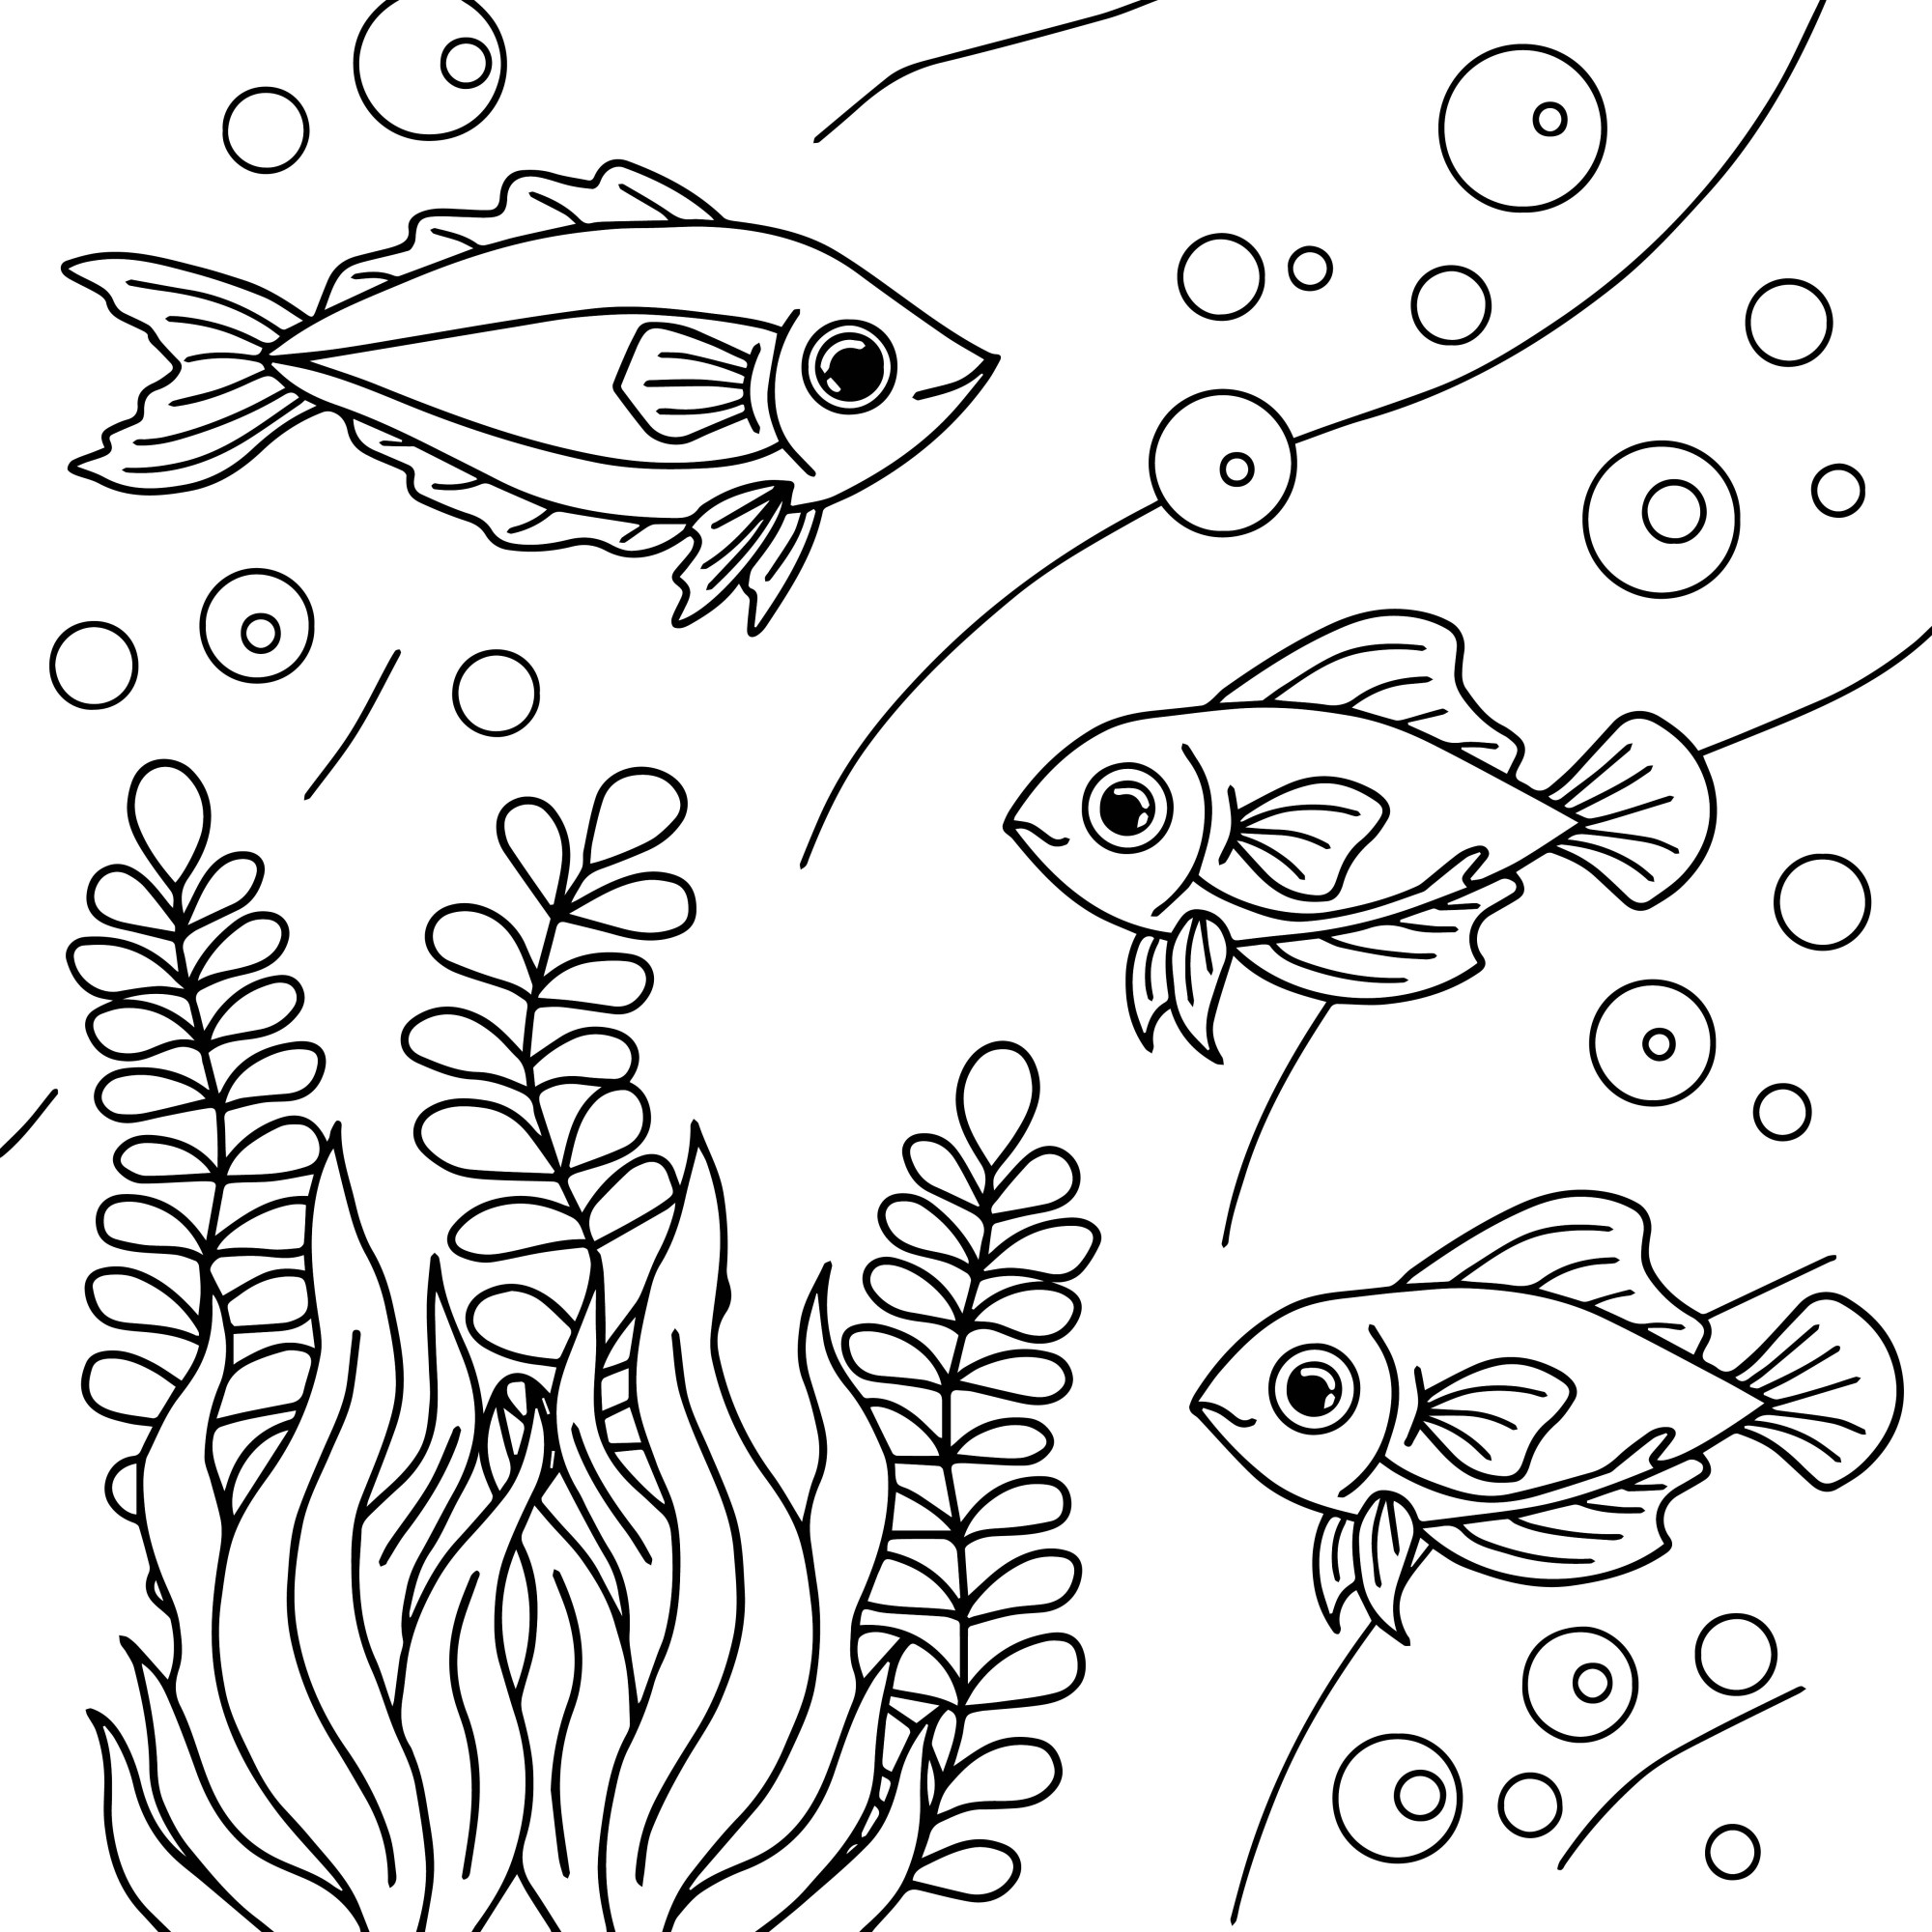 Раскраска для детей: рыбки «Суетливое подводное царство»